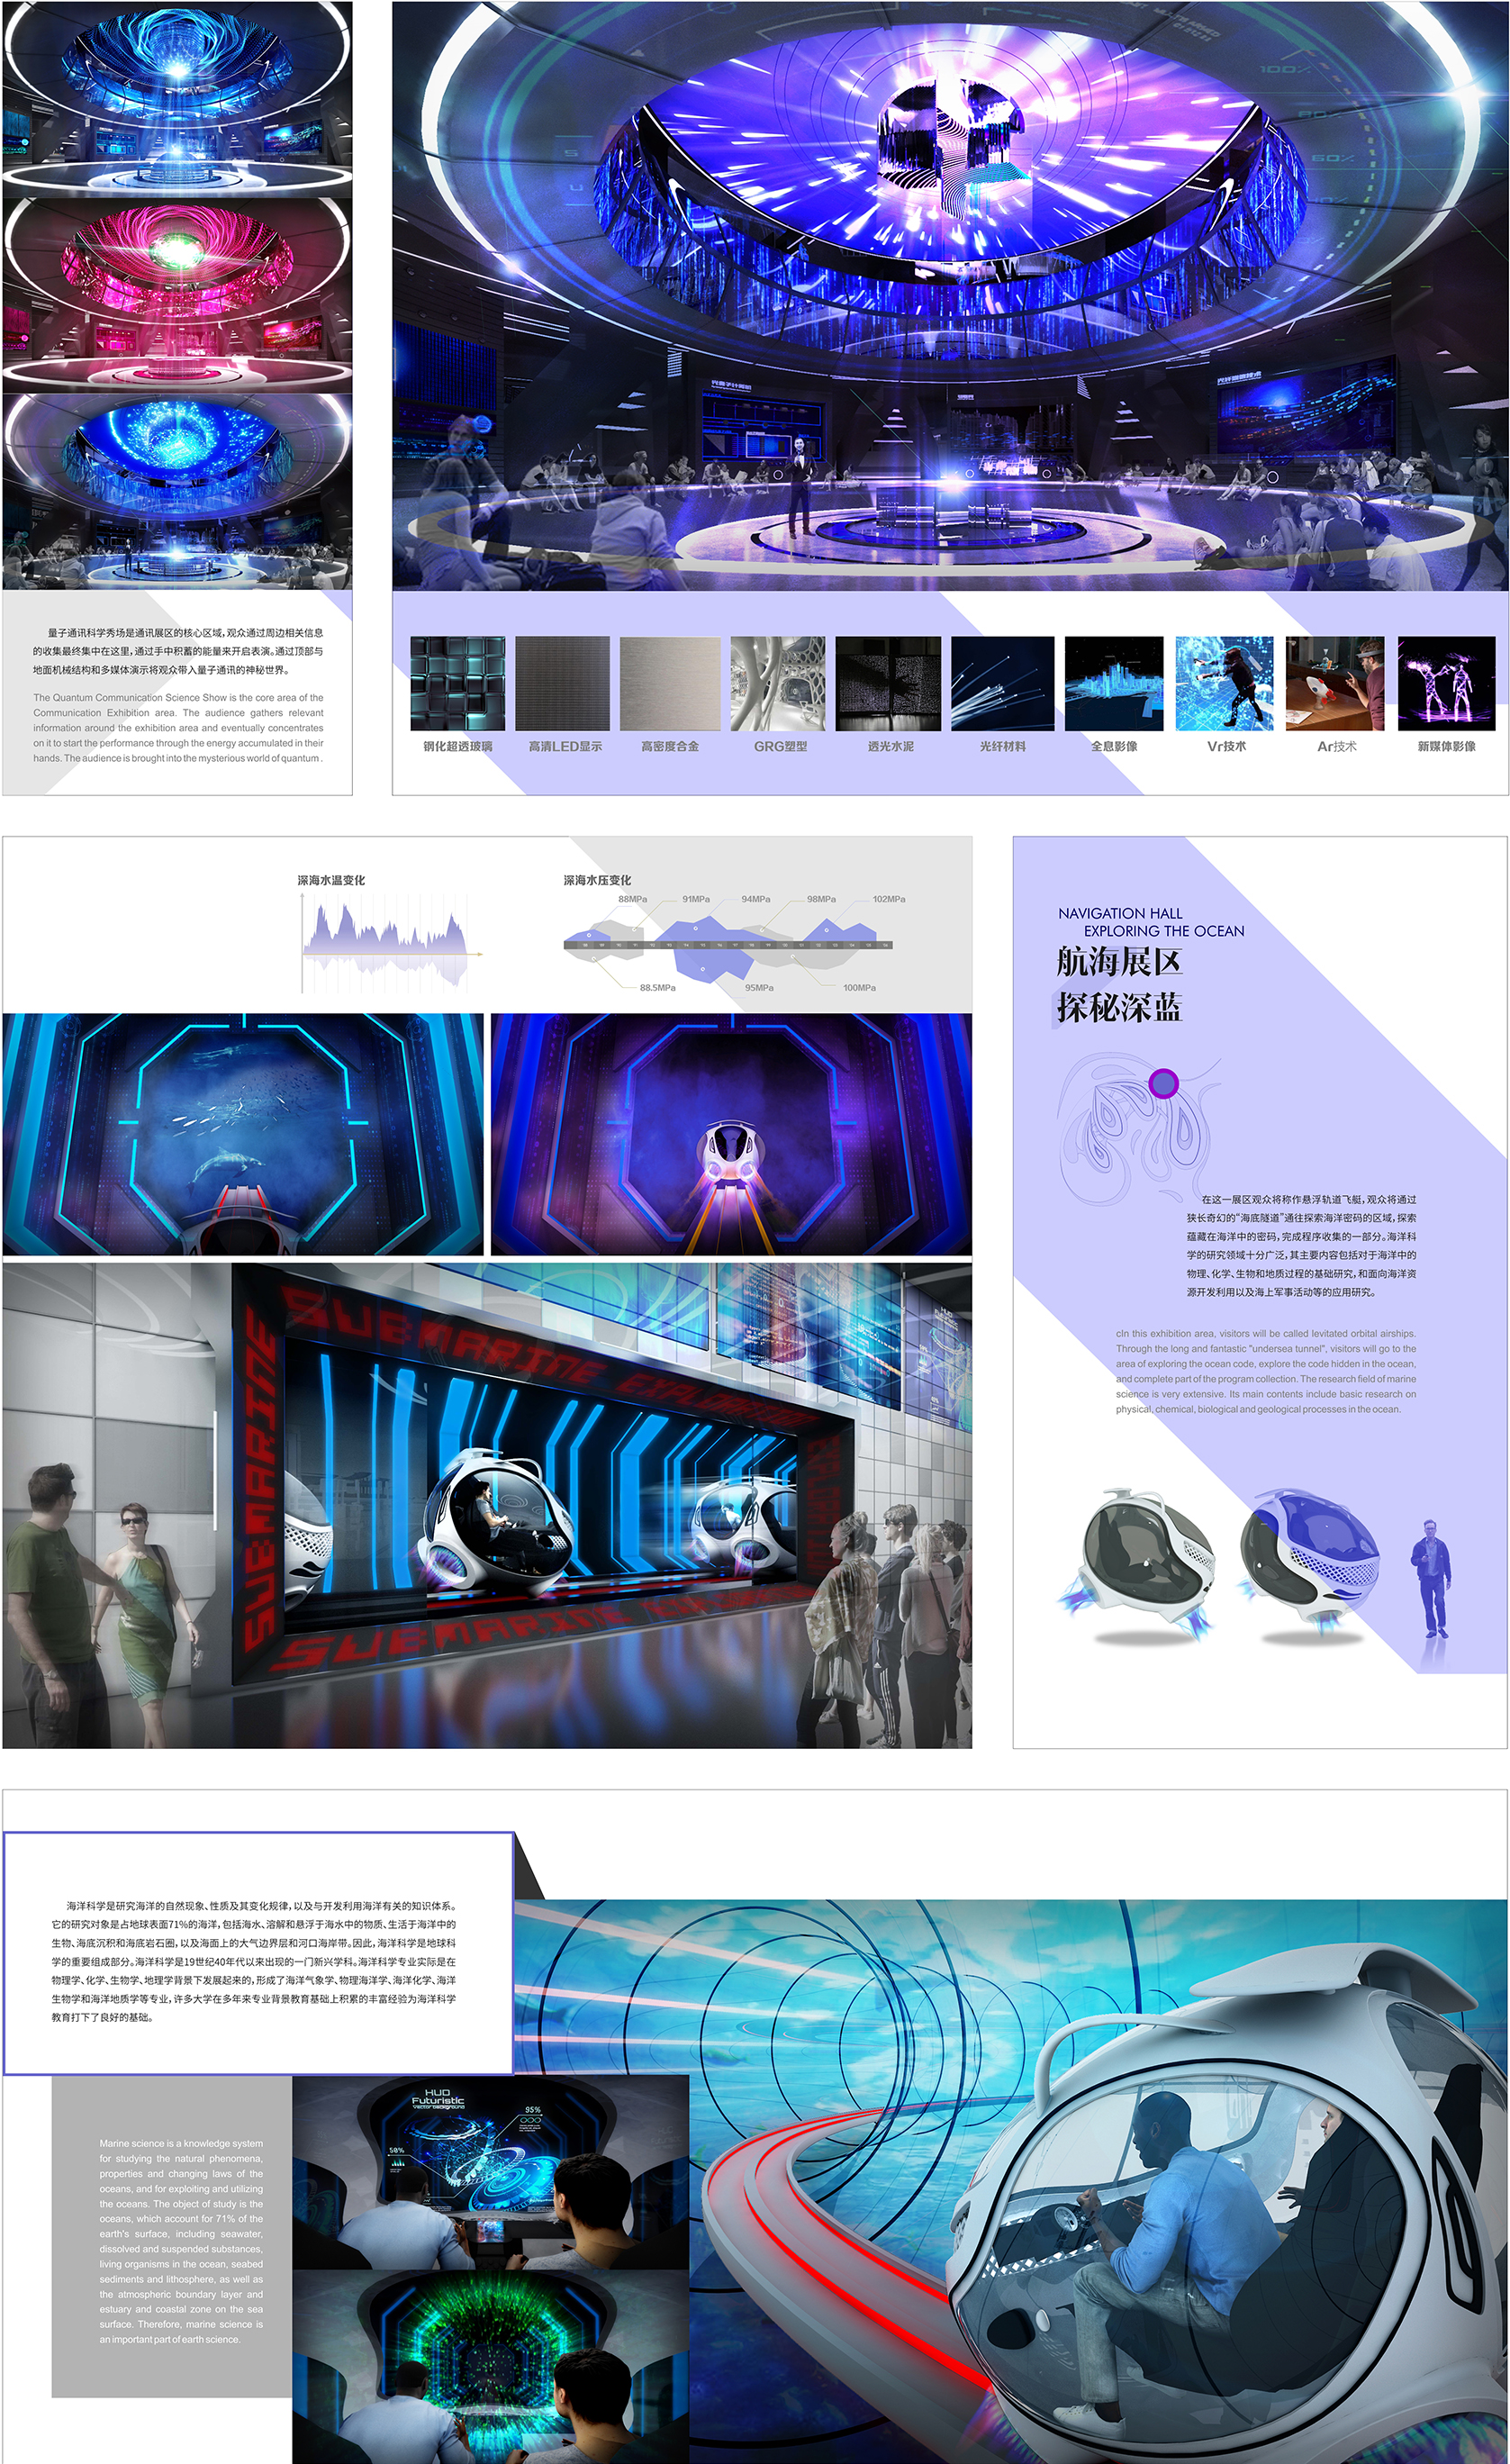 逆行X 2035 —— 科学探索体验中心概念设计